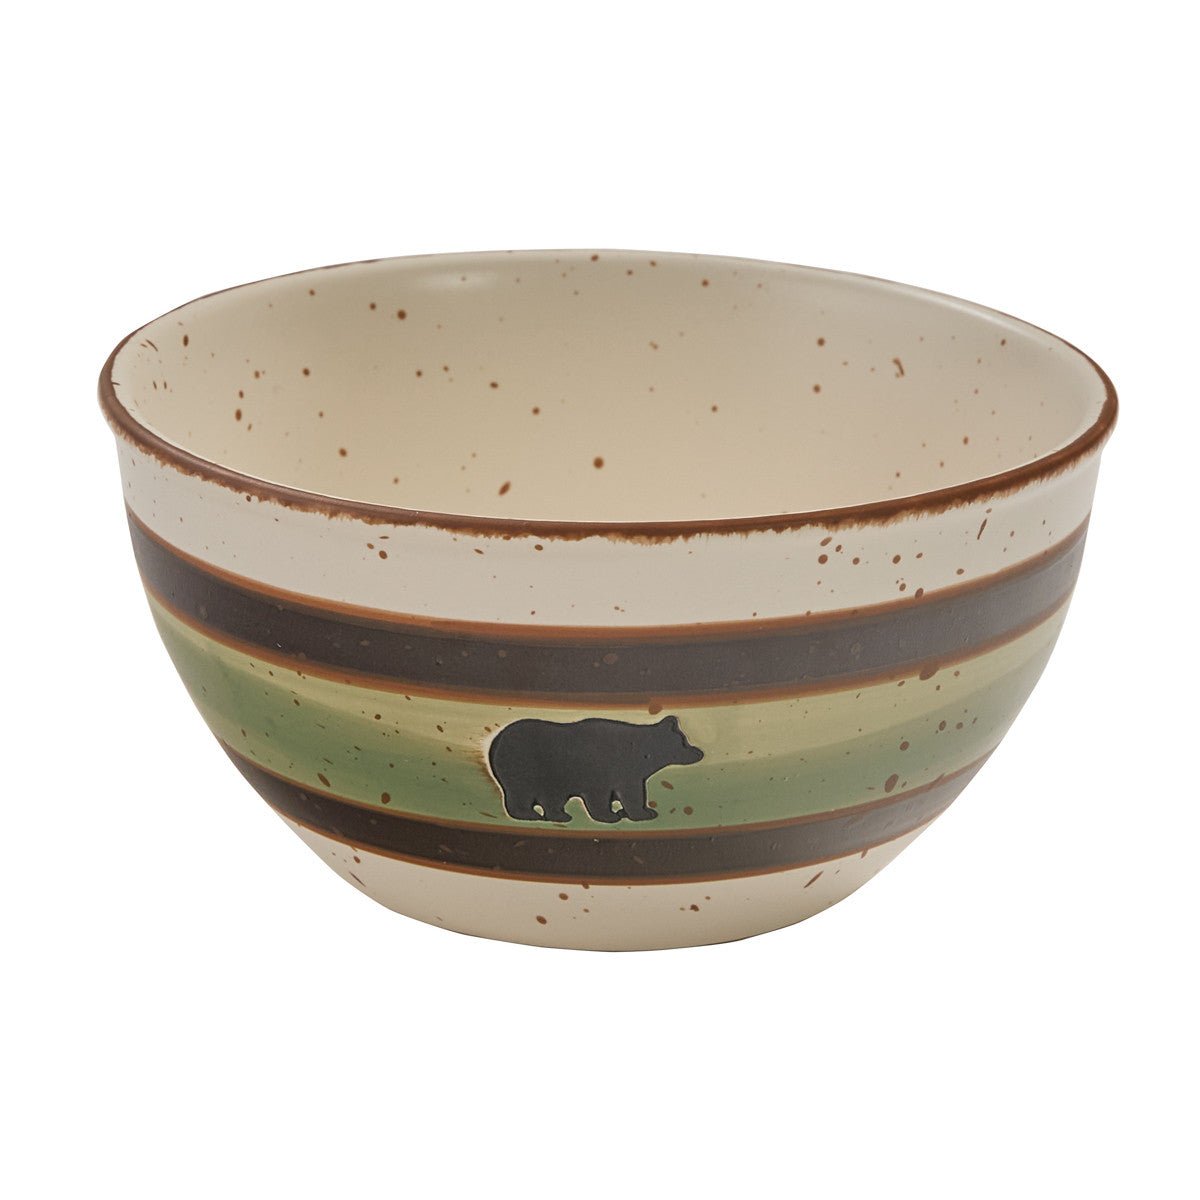 Bear & Moose Stoneware Mixing Bowl Set - 3 pcs